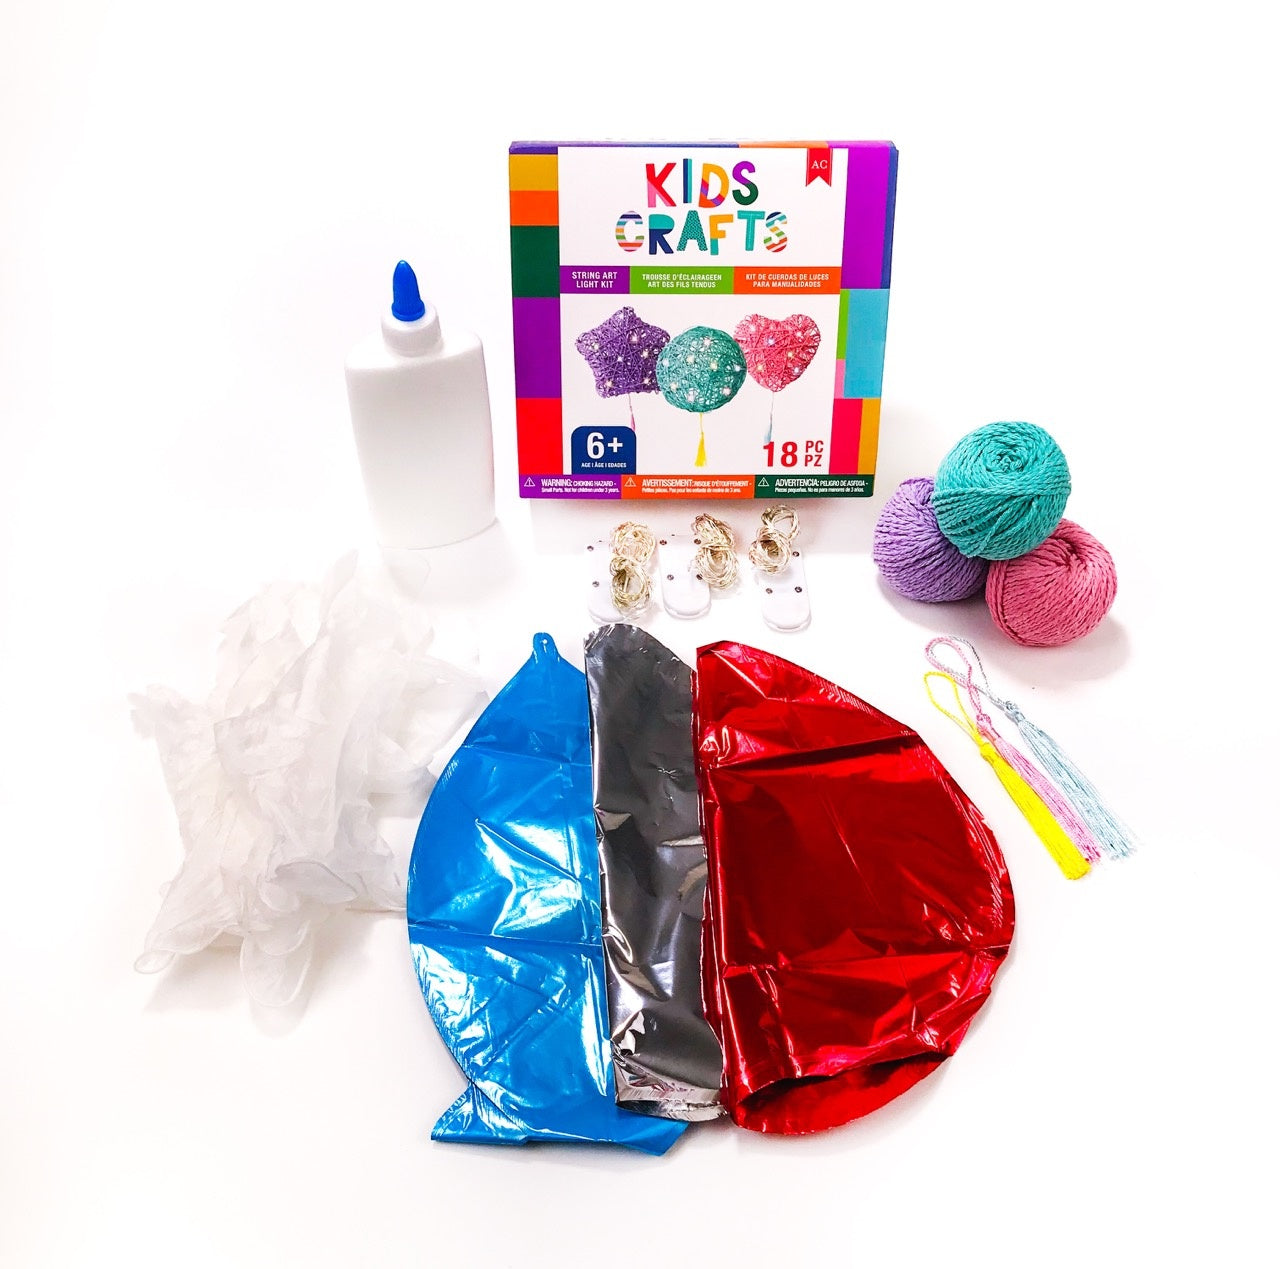 American Crafts Kids String Art Kit